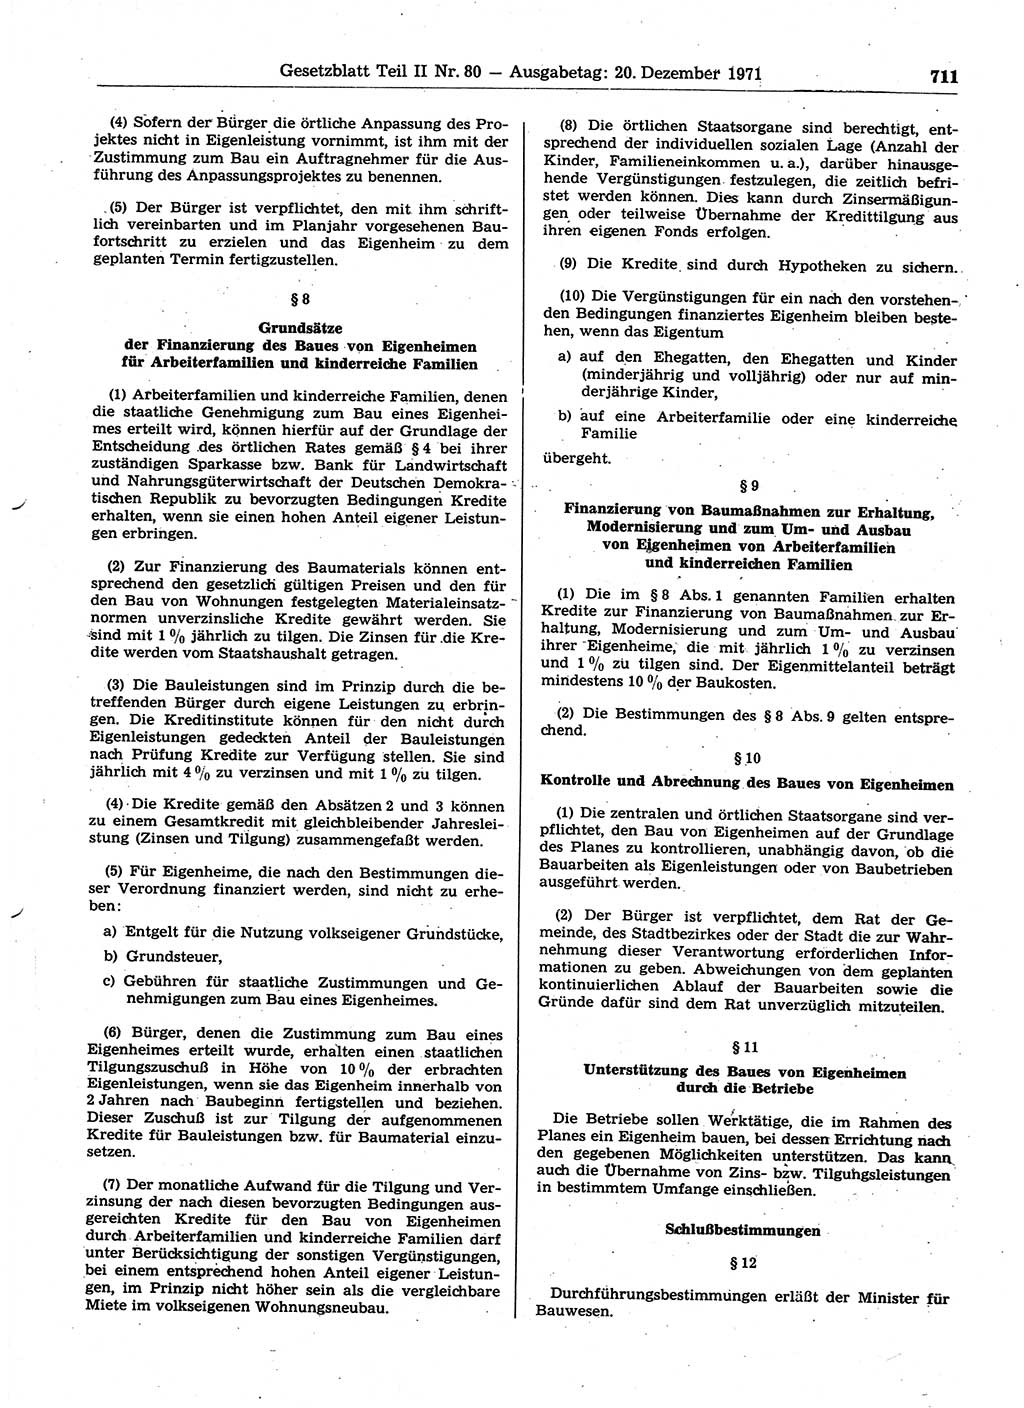 Gesetzblatt (GBl.) der Deutschen Demokratischen Republik (DDR) Teil ⅠⅠ 1971, Seite 711 (GBl. DDR ⅠⅠ 1971, S. 711)